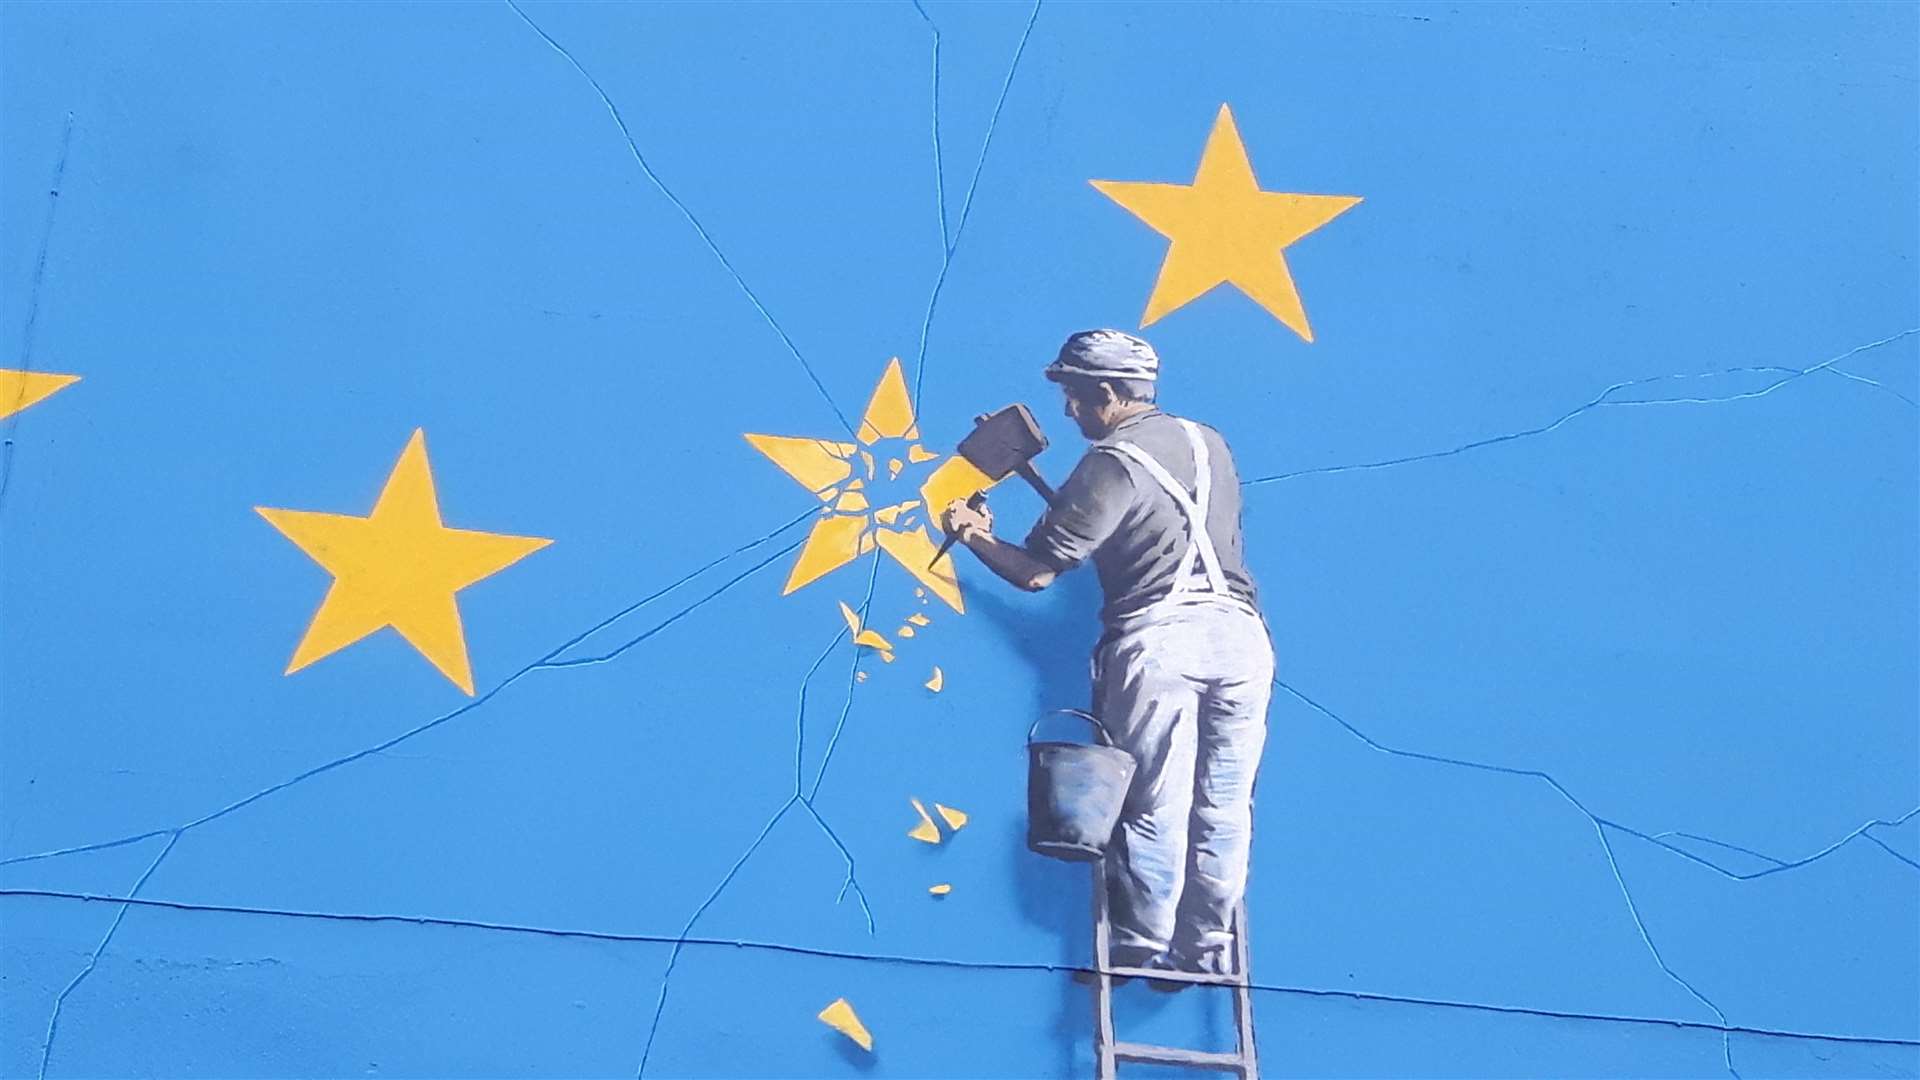 The Banksy mural in Dover, symbolising Brexit